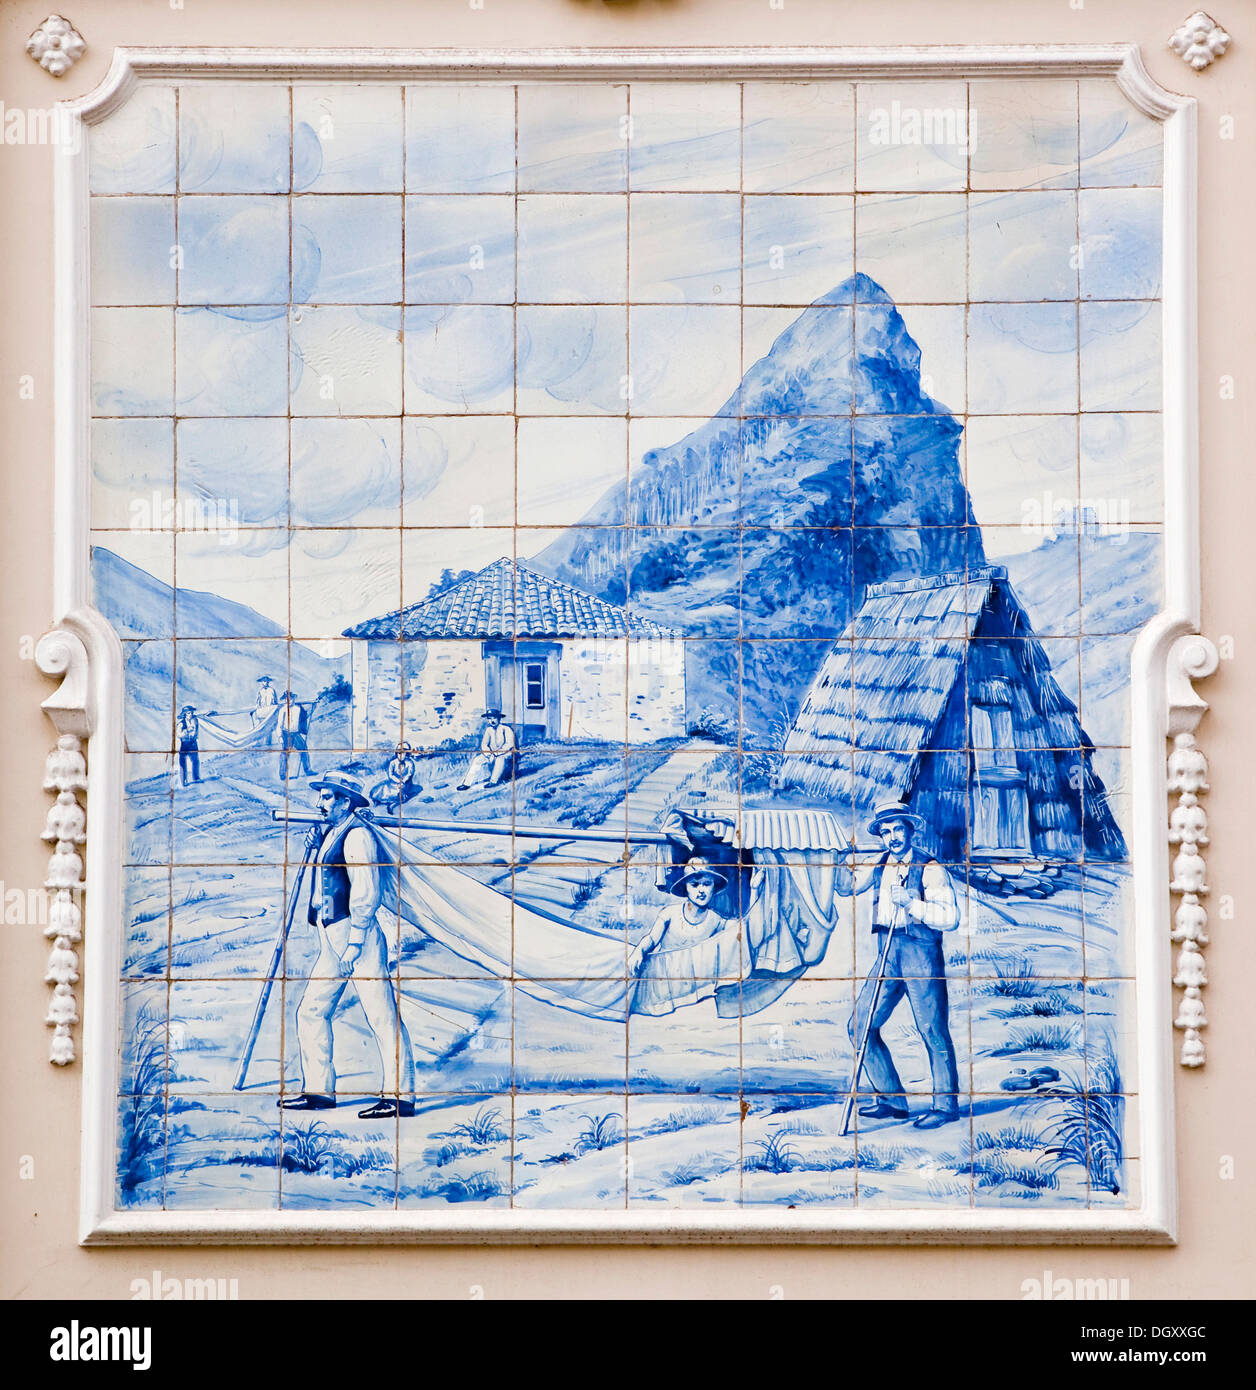 Peinture murale, Azulejo carreaux de céramique peint, touristiques en cours dans un hamac, sur le théâtre local à Funchal, Madère Banque D'Images